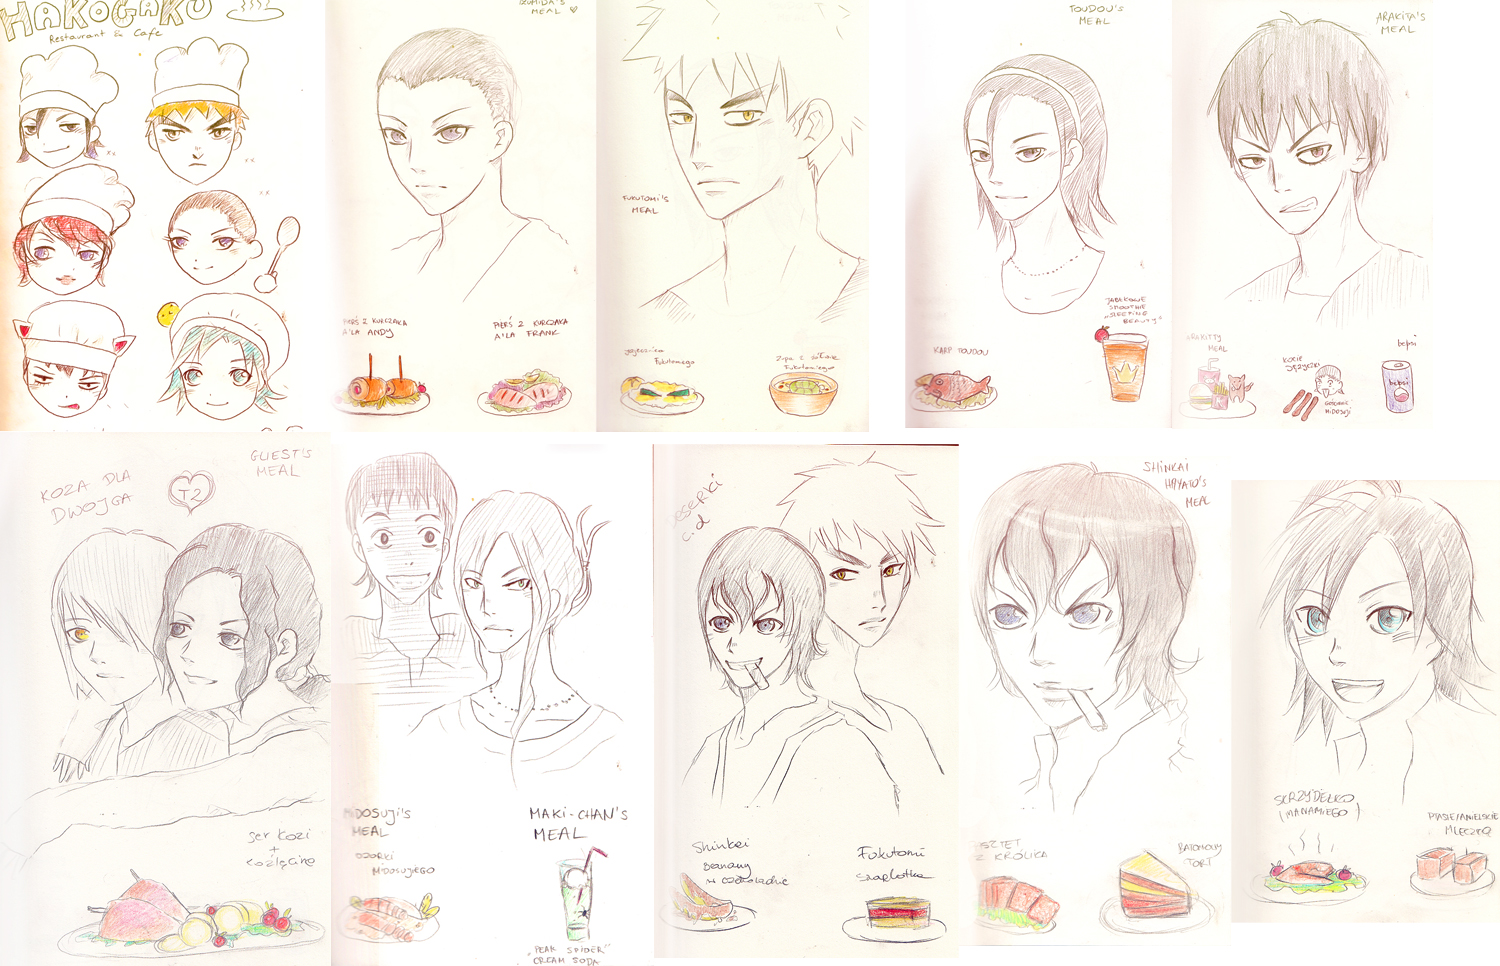 Hakogaku Restaurant sketches